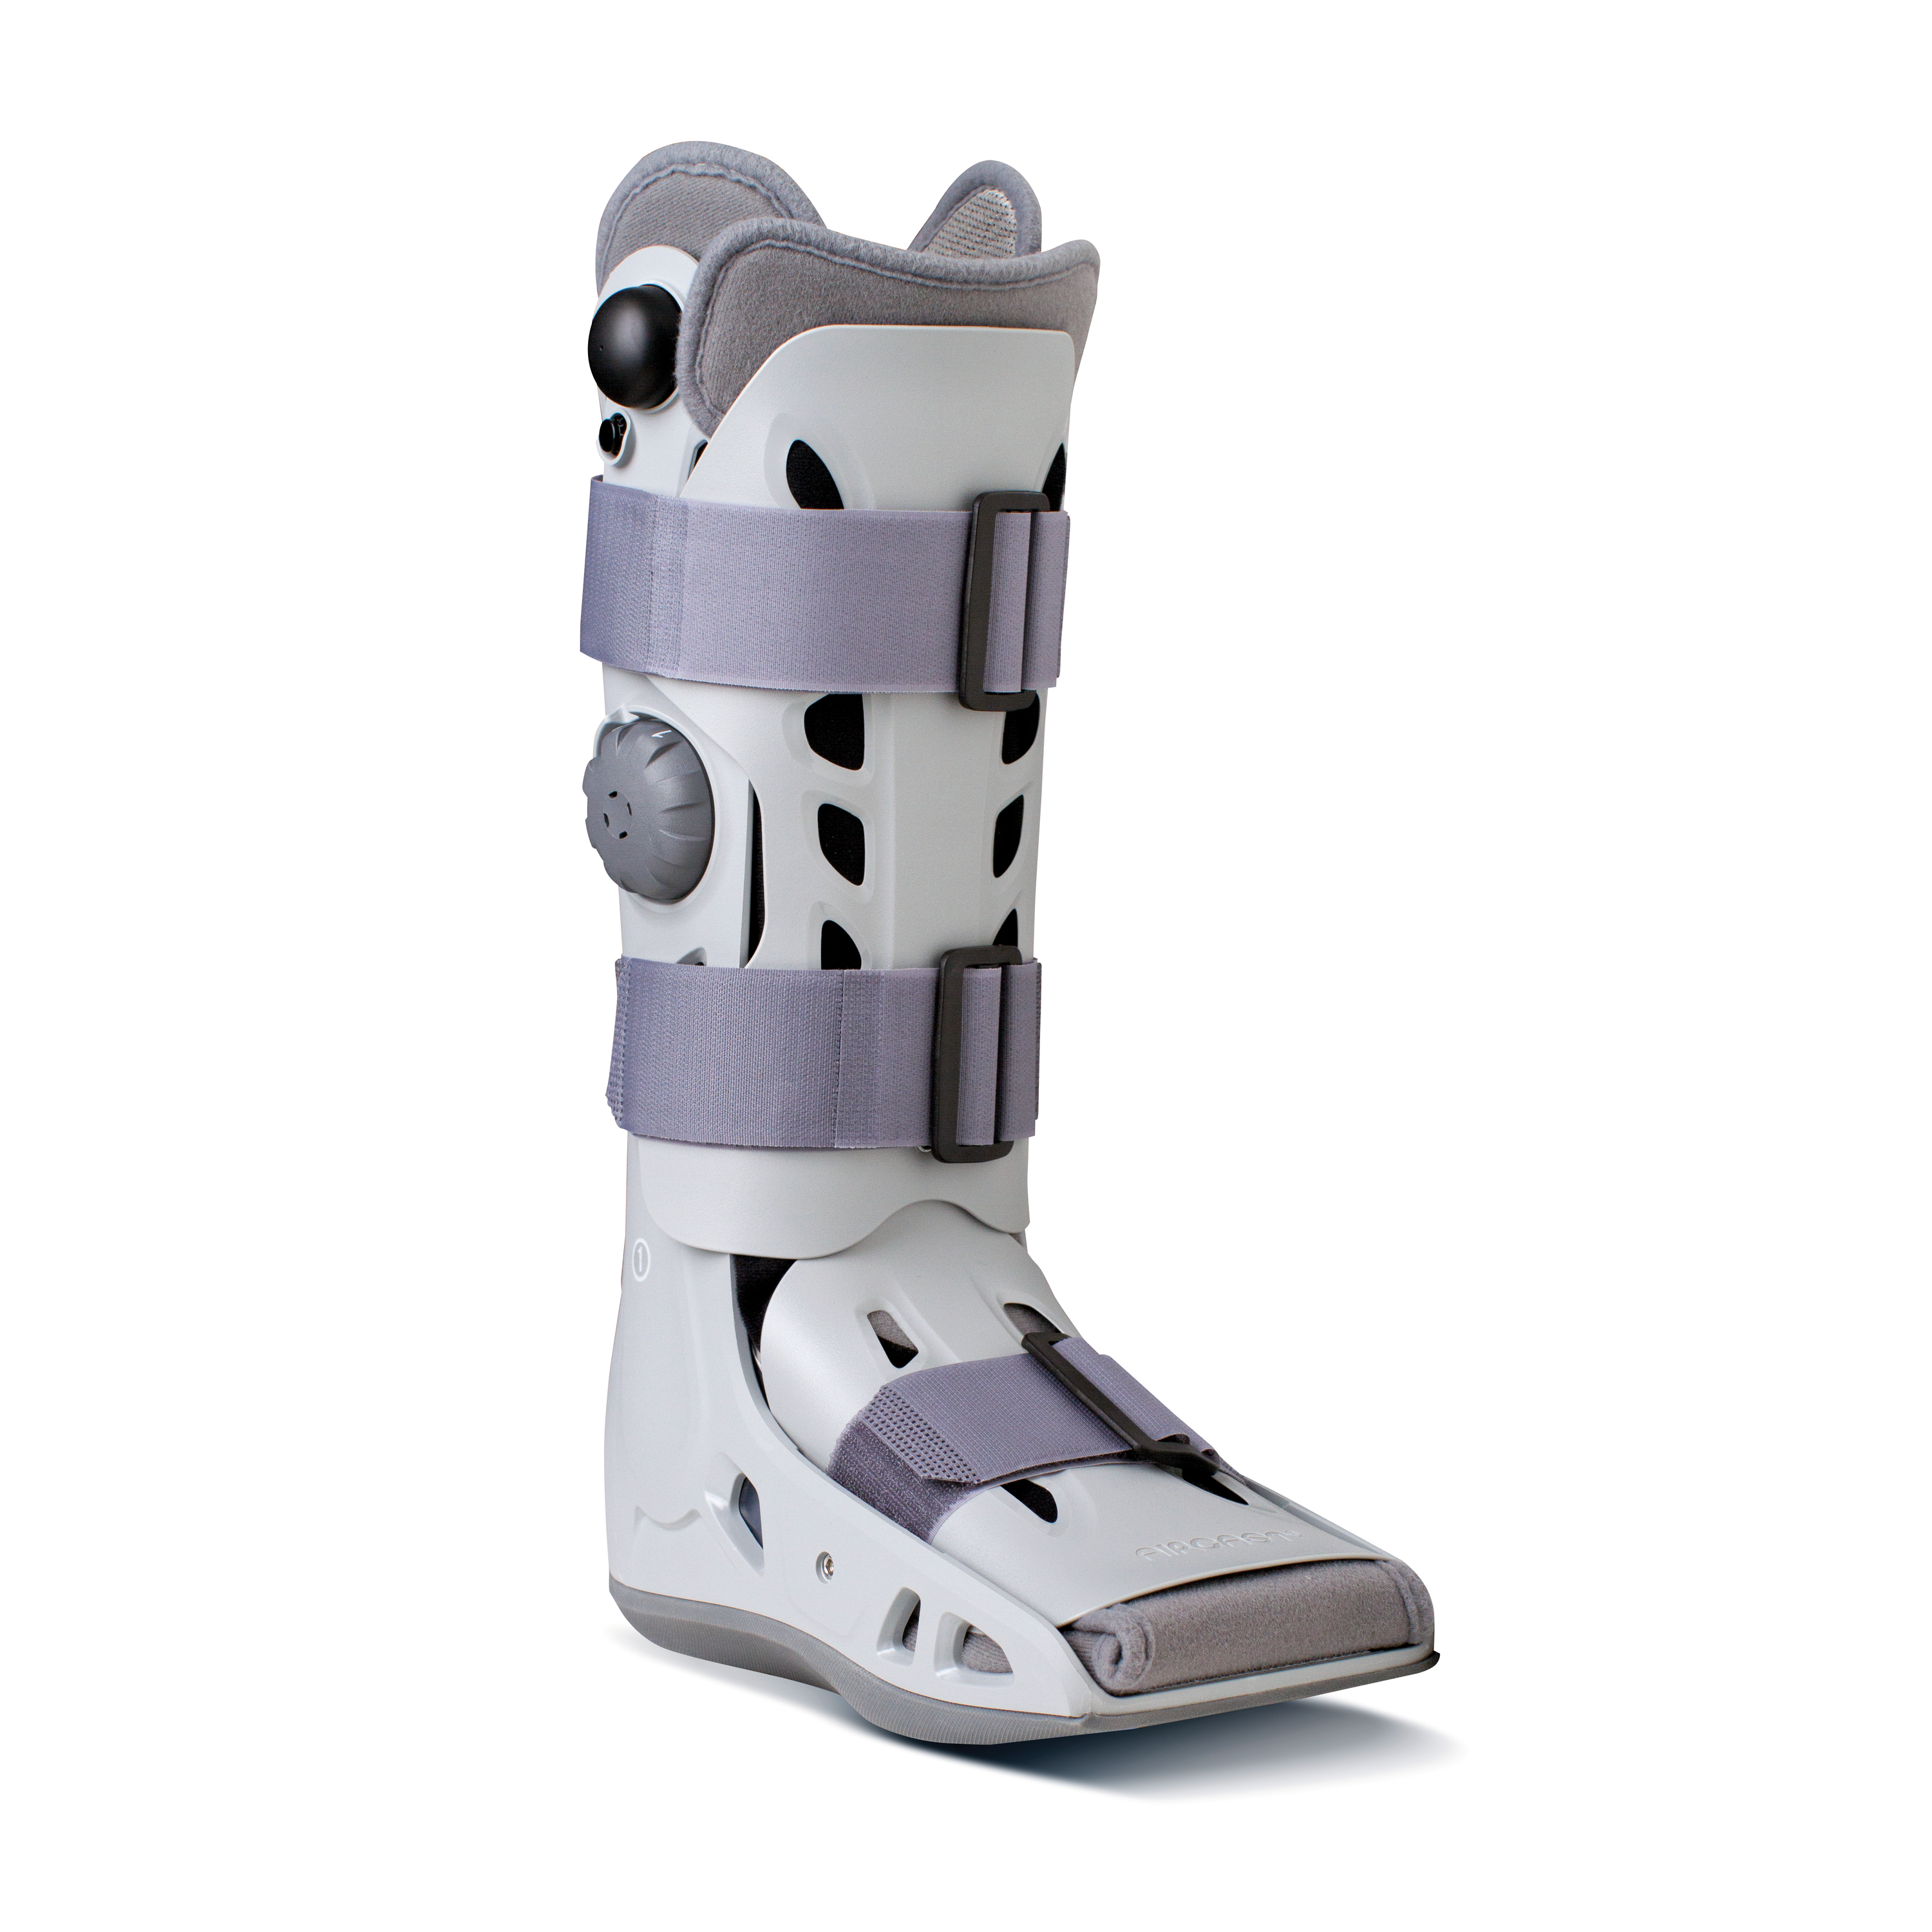 AIRCAST® Airselect™ Achilles Walker Produktbild Unterschenkel-Fuß-Orthese zur Immobilisierung in definierten, einstellbaren Positionen